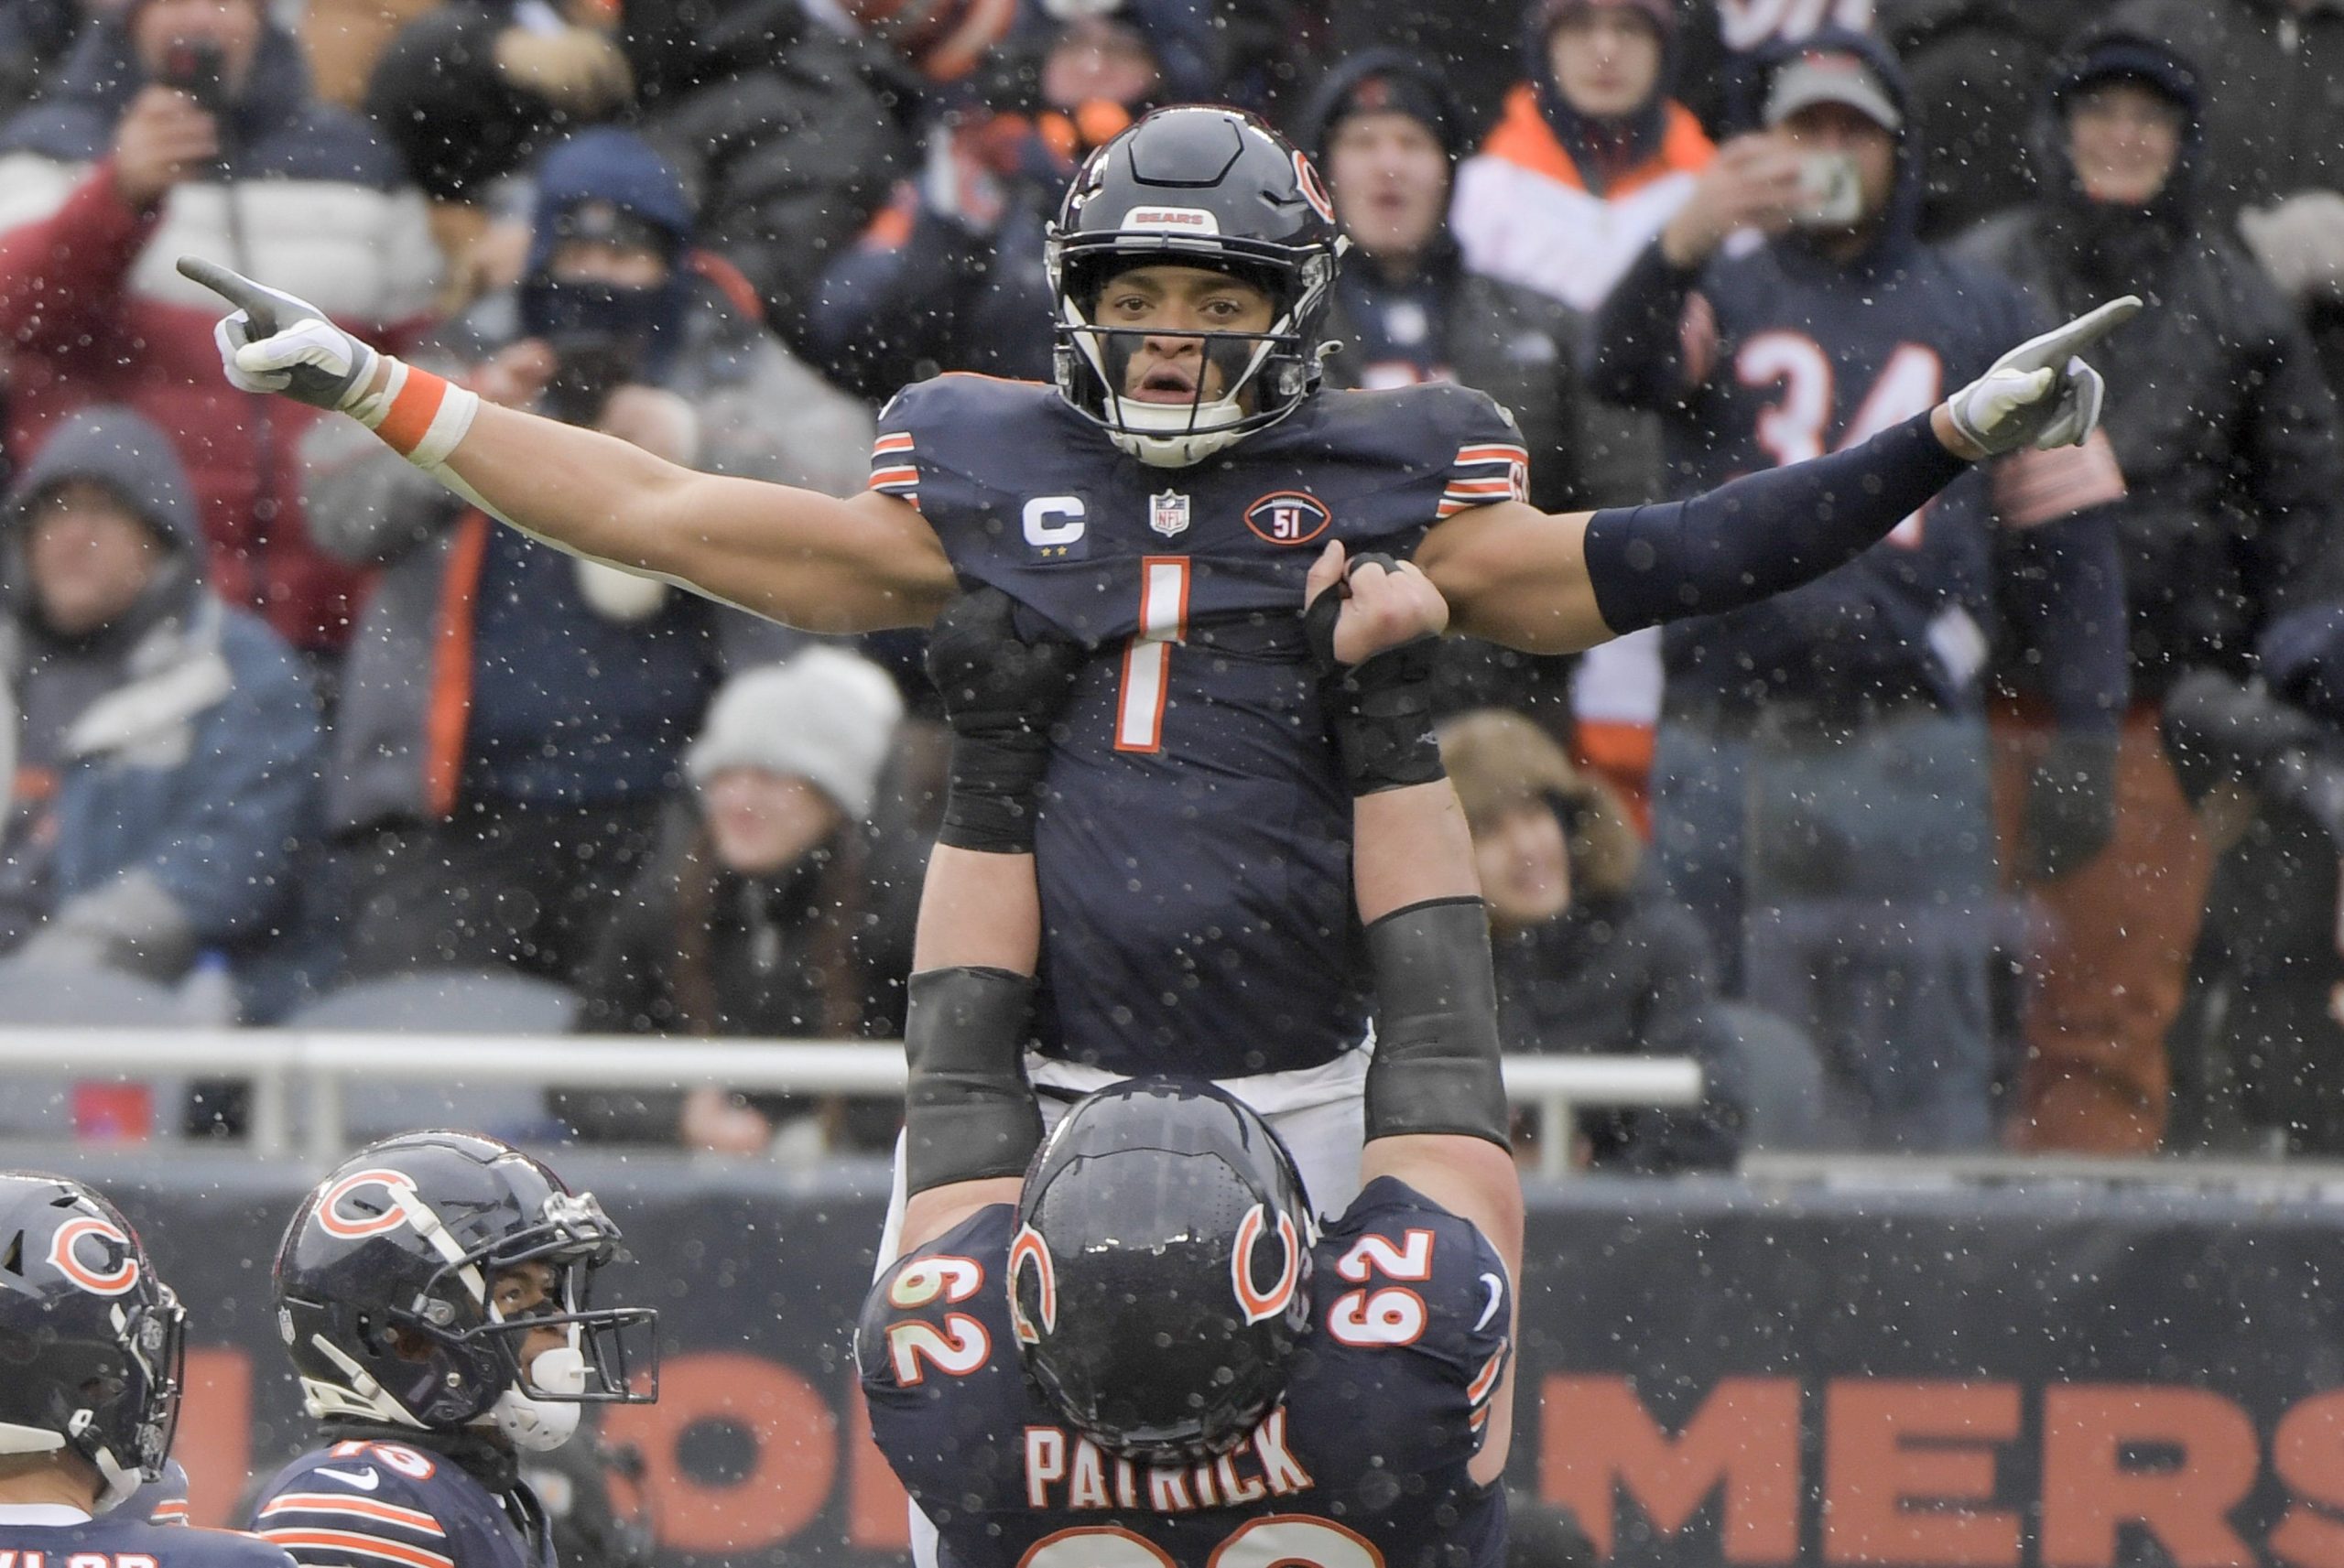 FootballR - NFL - Justin Fields - Die Bears feiern einen Touchdown während eines NFL-Spiels.